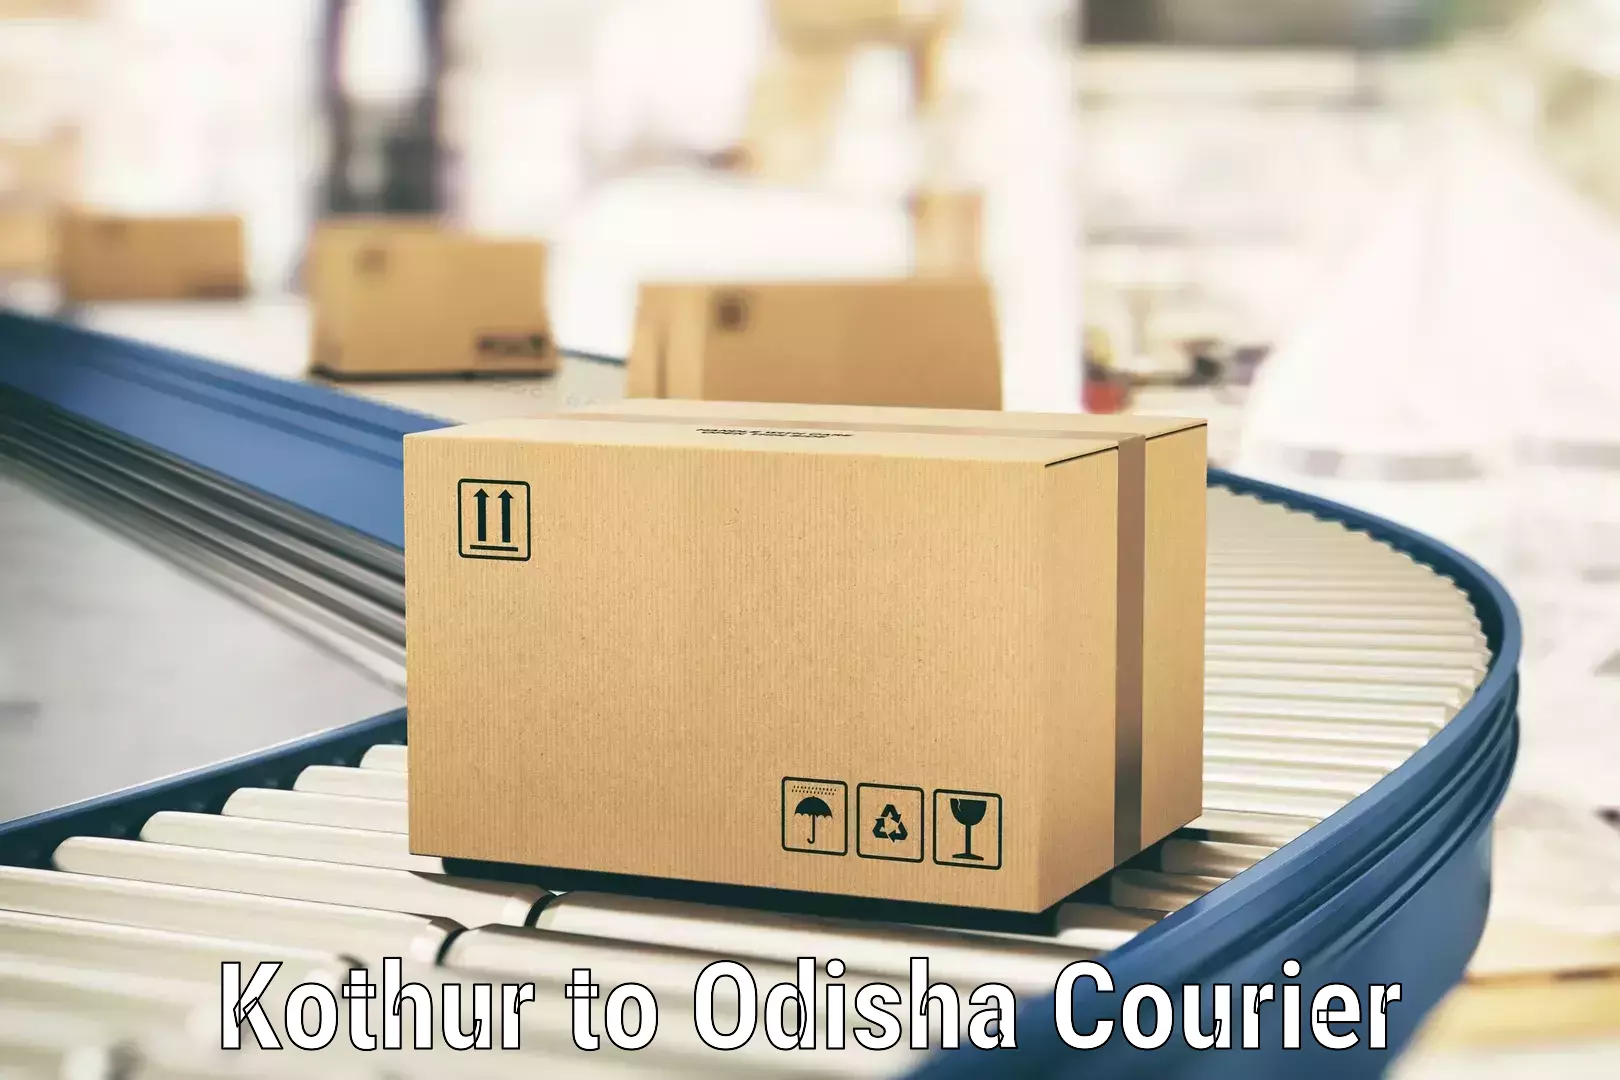 Reliable courier service Kothur to NIT Rourkela